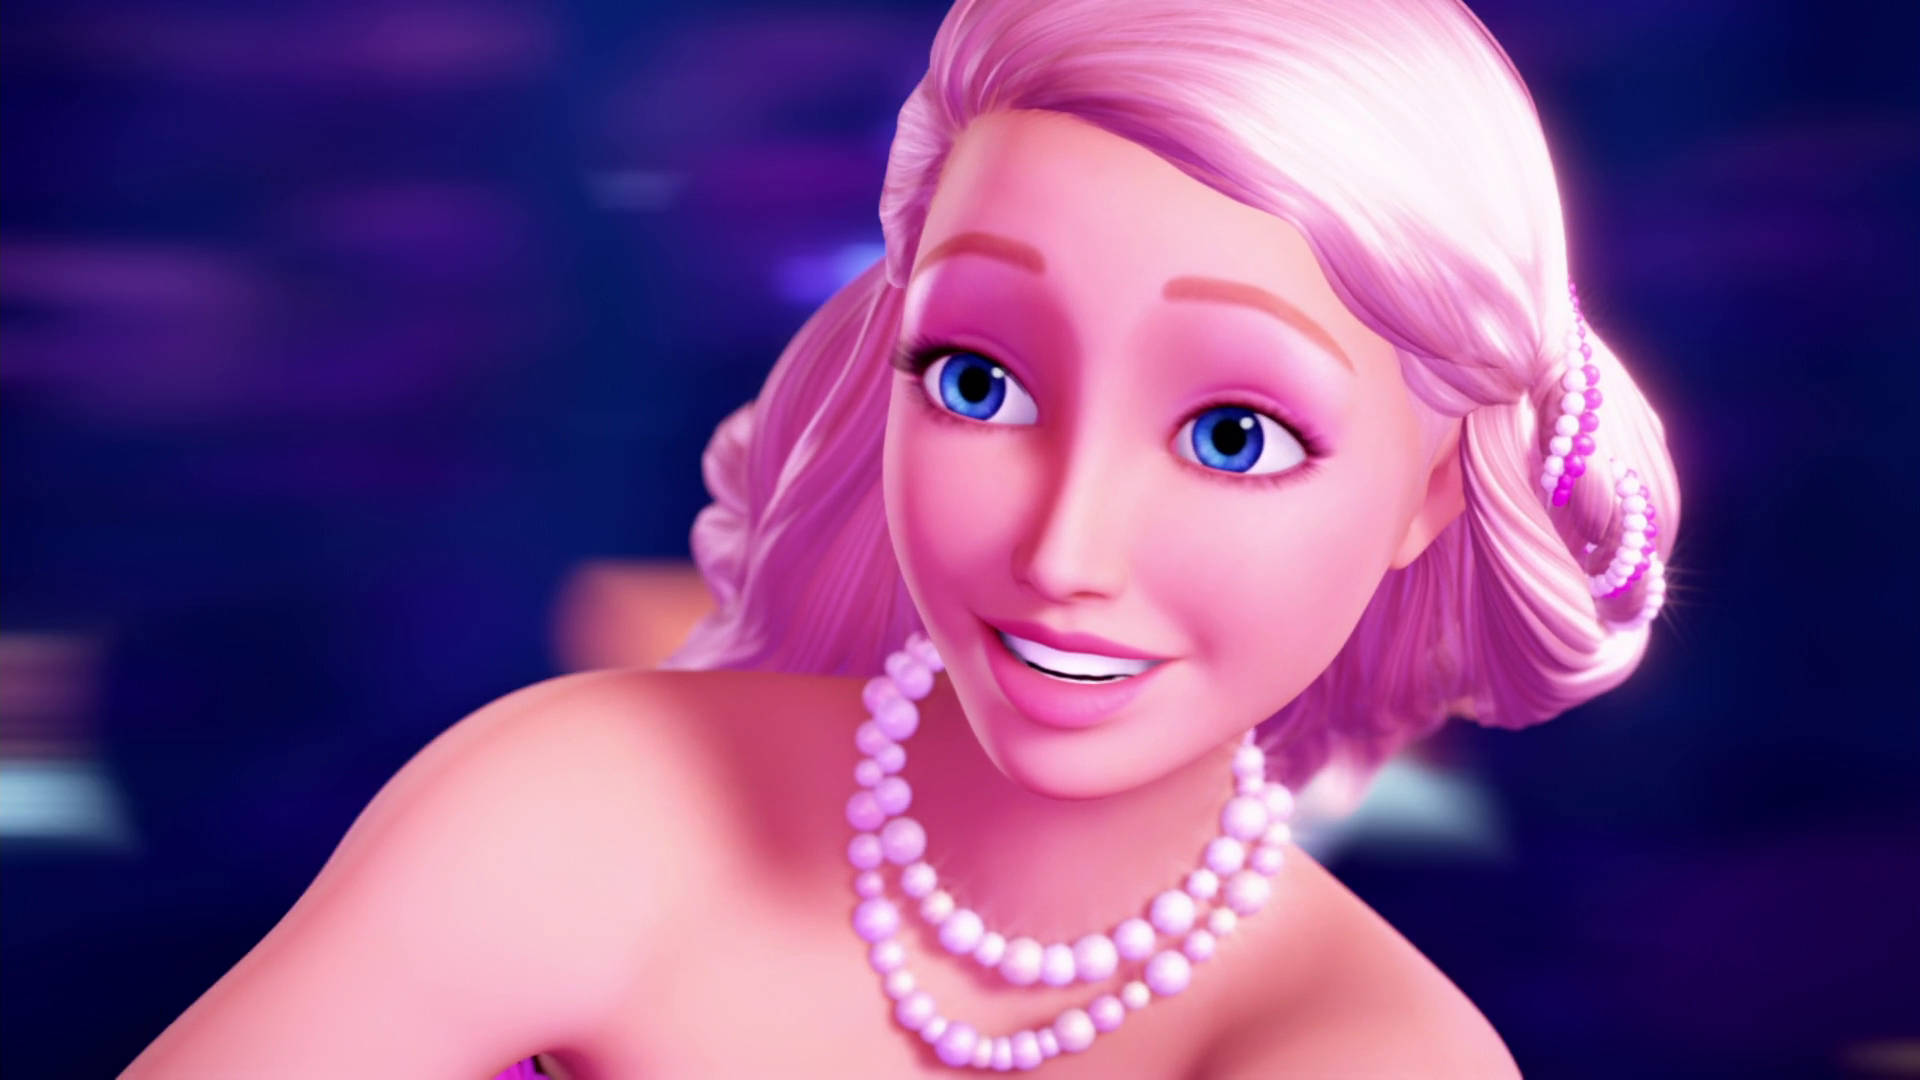 Barbie Prinsesse Merliah Close-up Scene Wallpaper